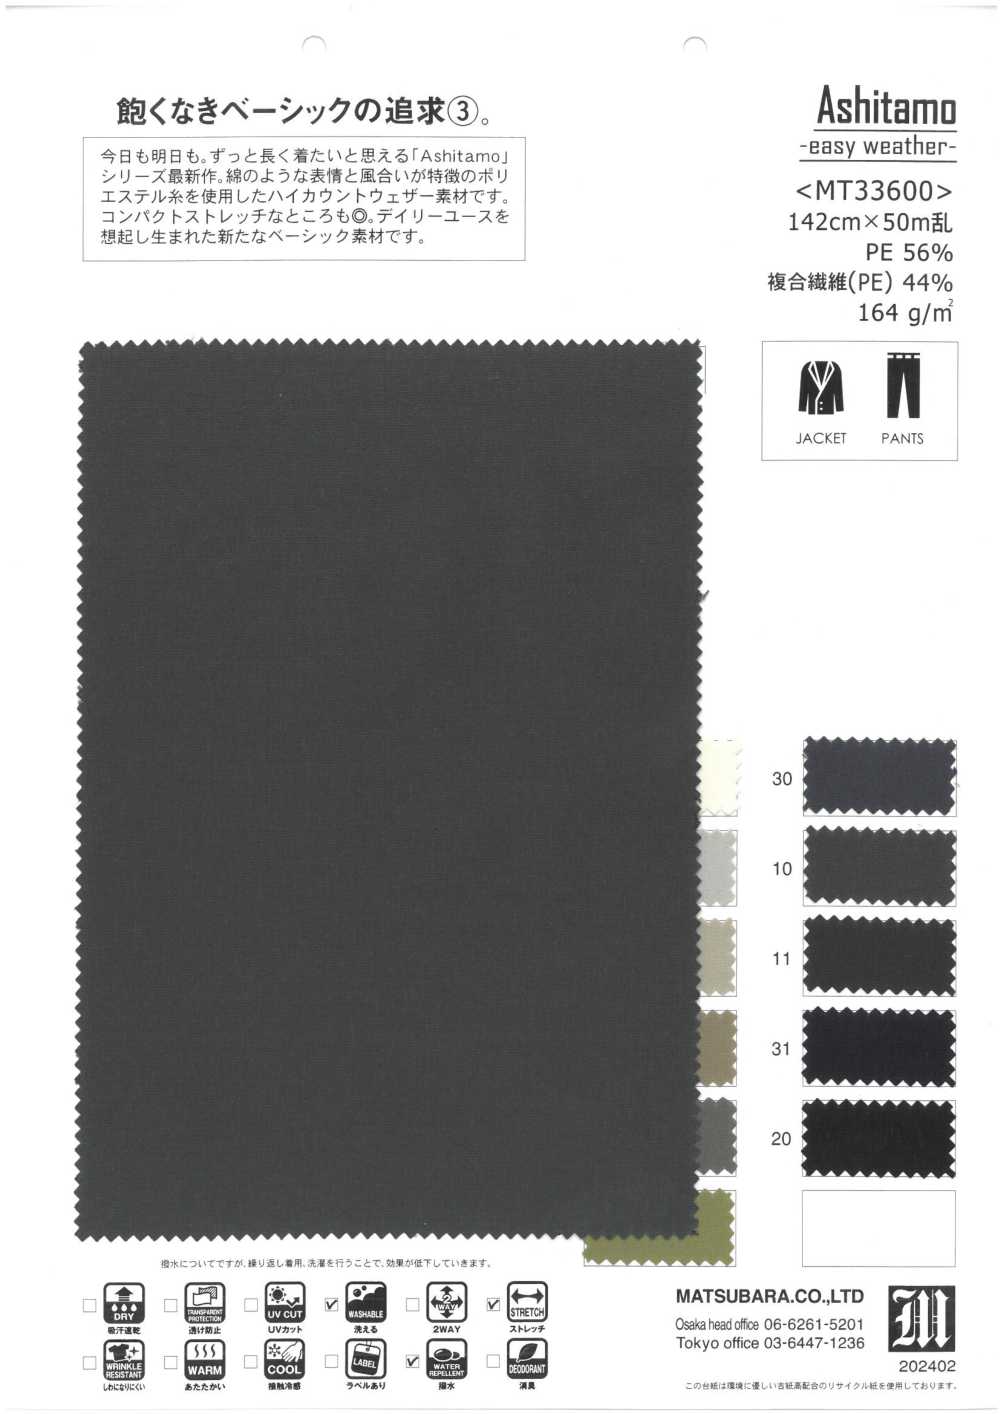 MT33600 Ashitamo -clima Fácil-[Têxtil / Tecido] Matsubara